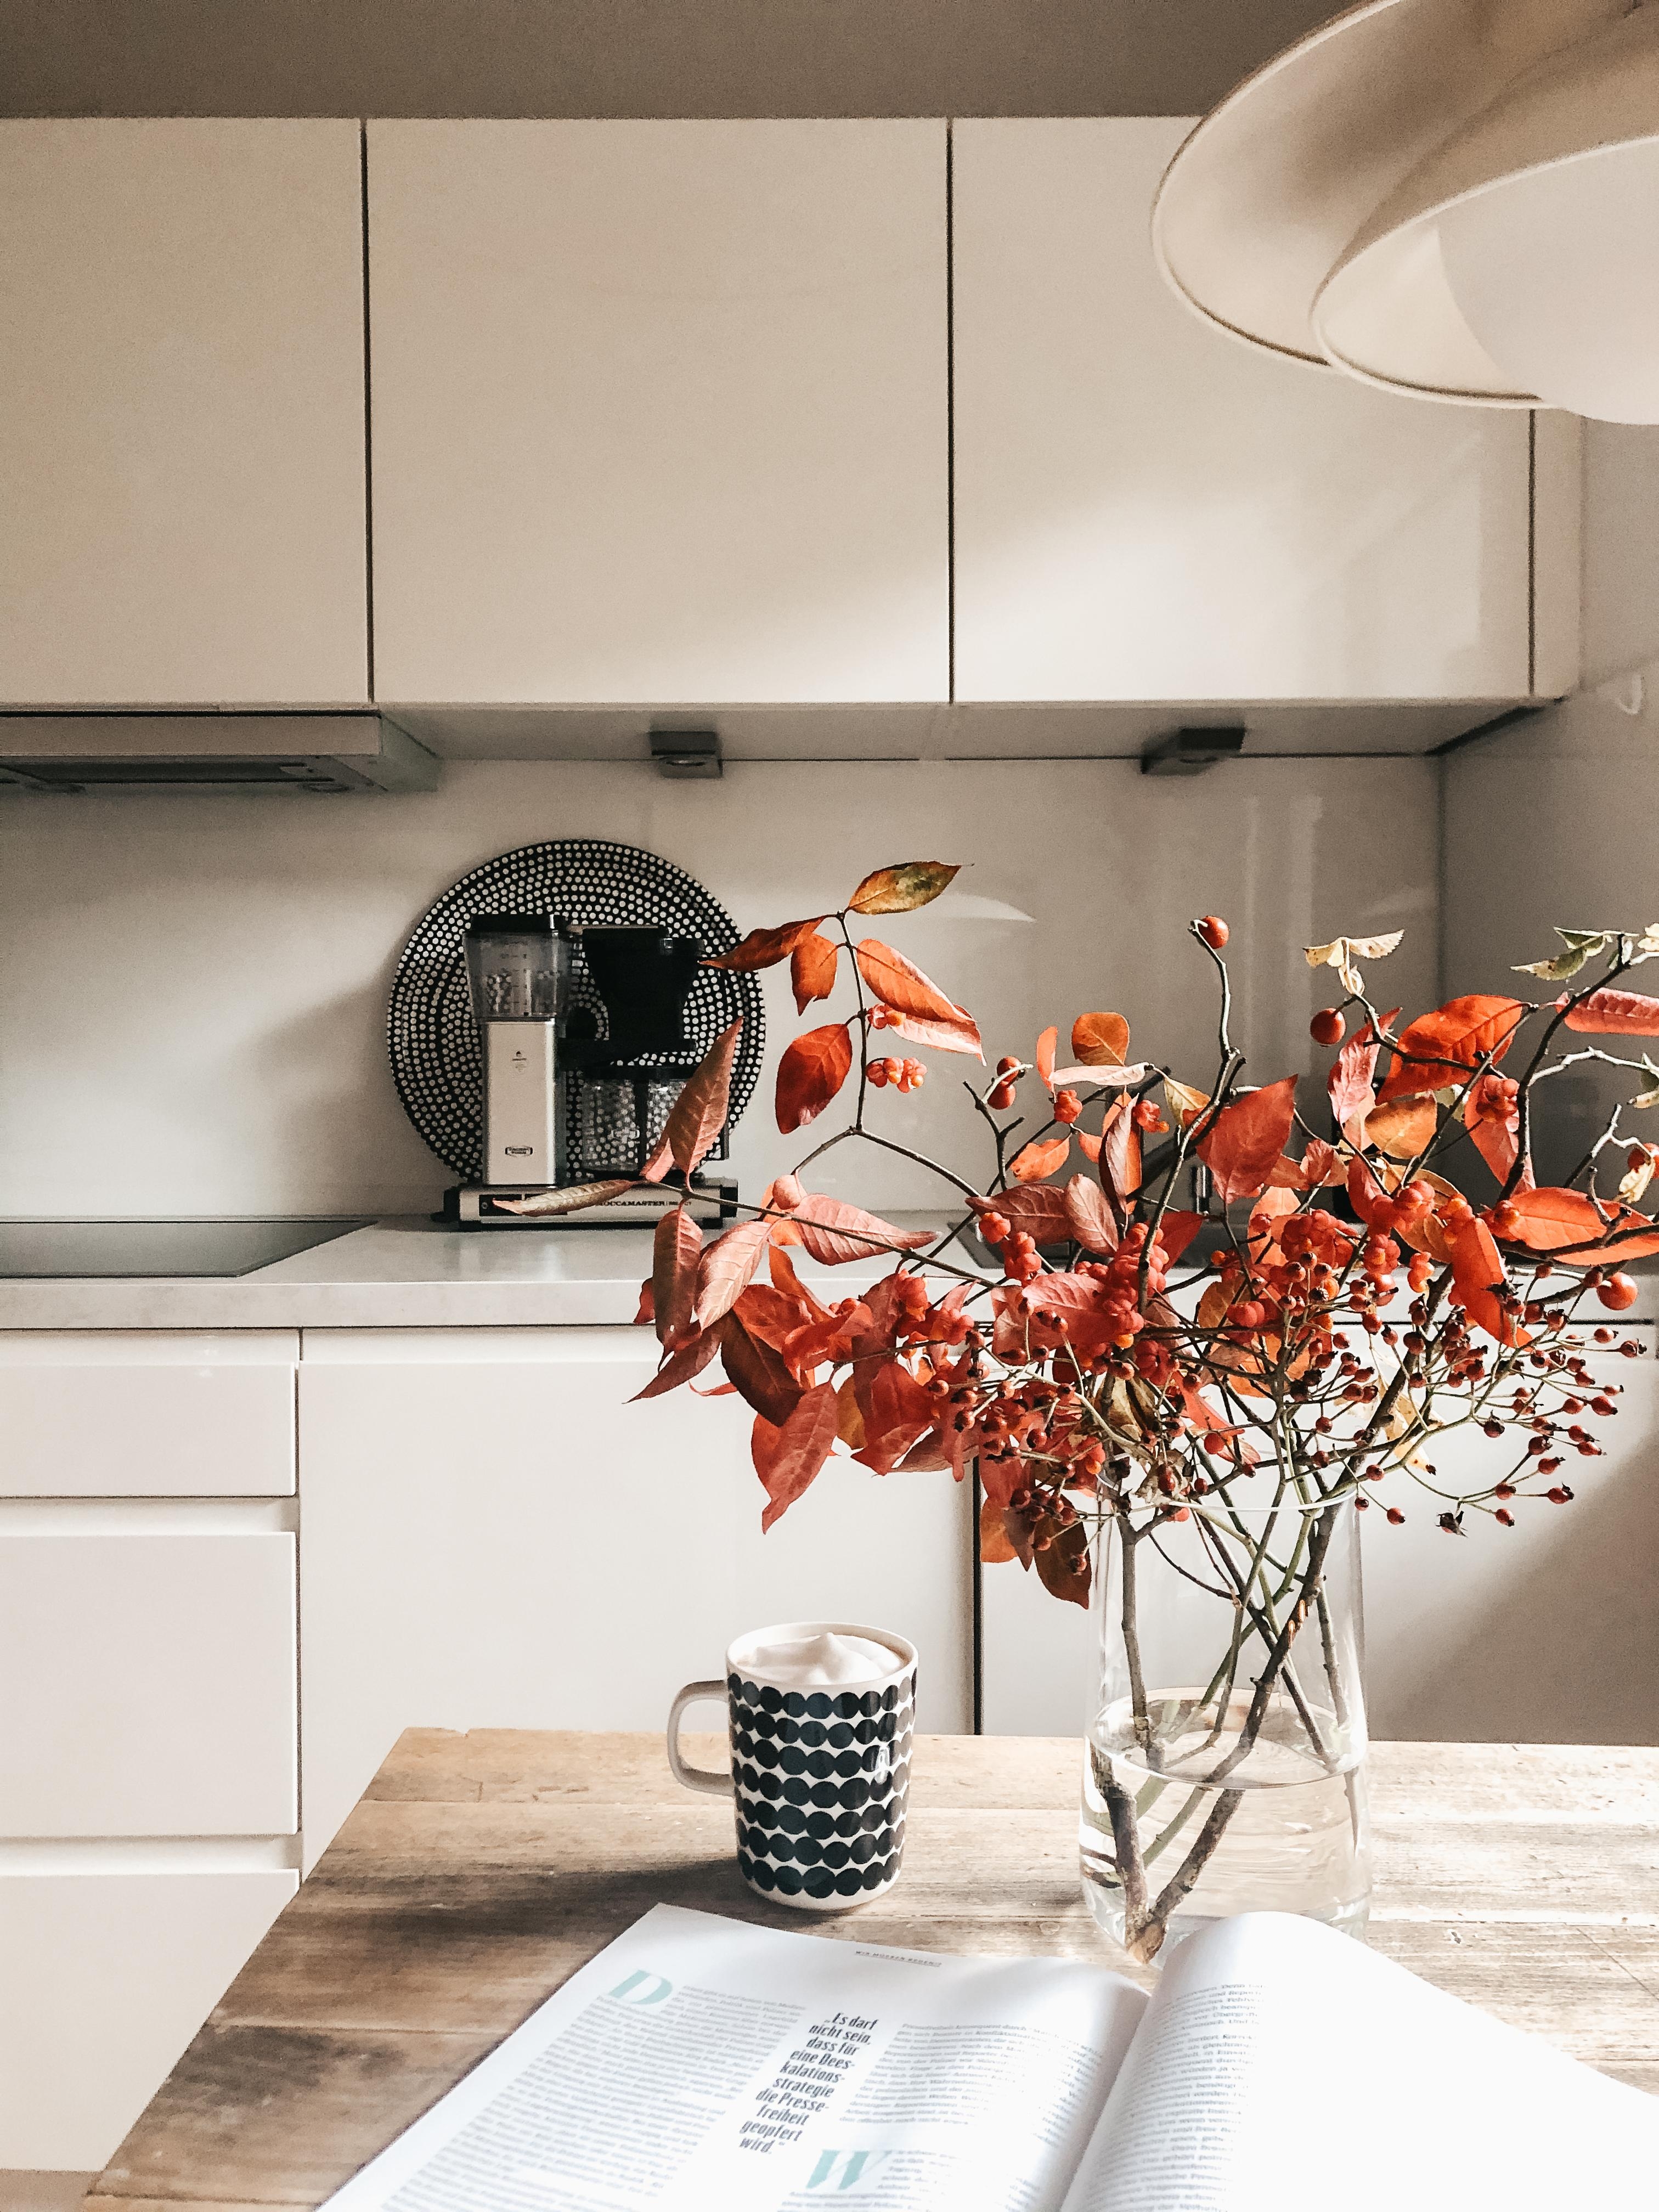 Herbstliebe ❤️
#küche #kitchen #herbstdeko